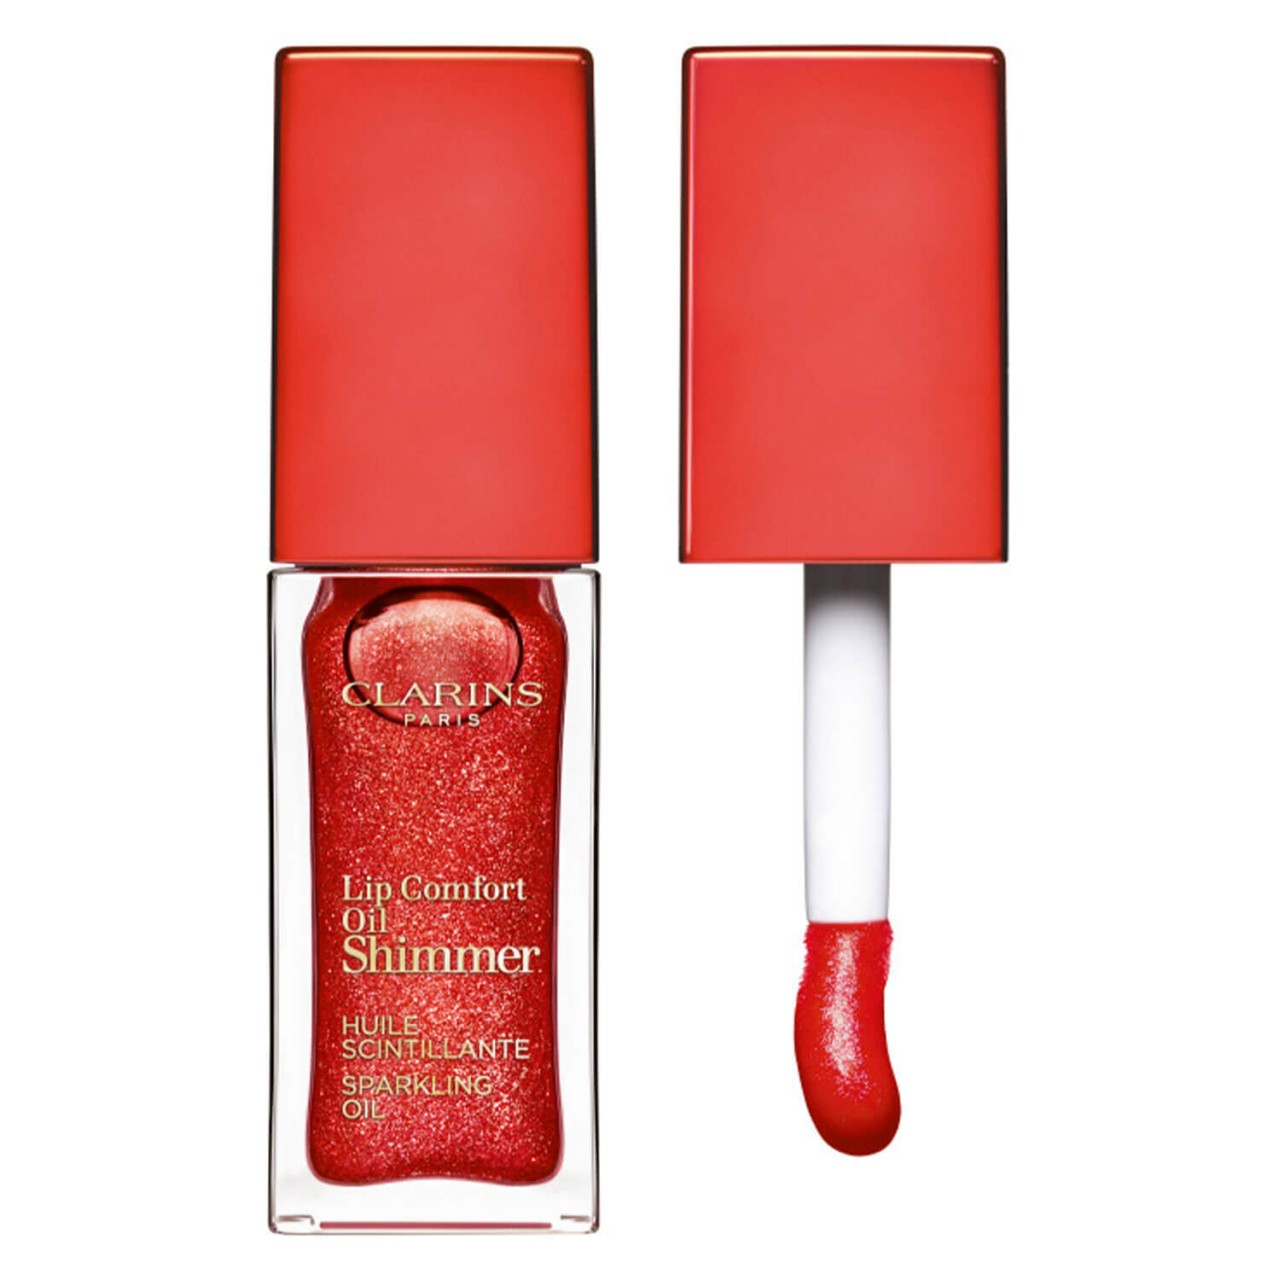 Lip Comfort Oil - Shimmer Red Hot 07 von Clarins